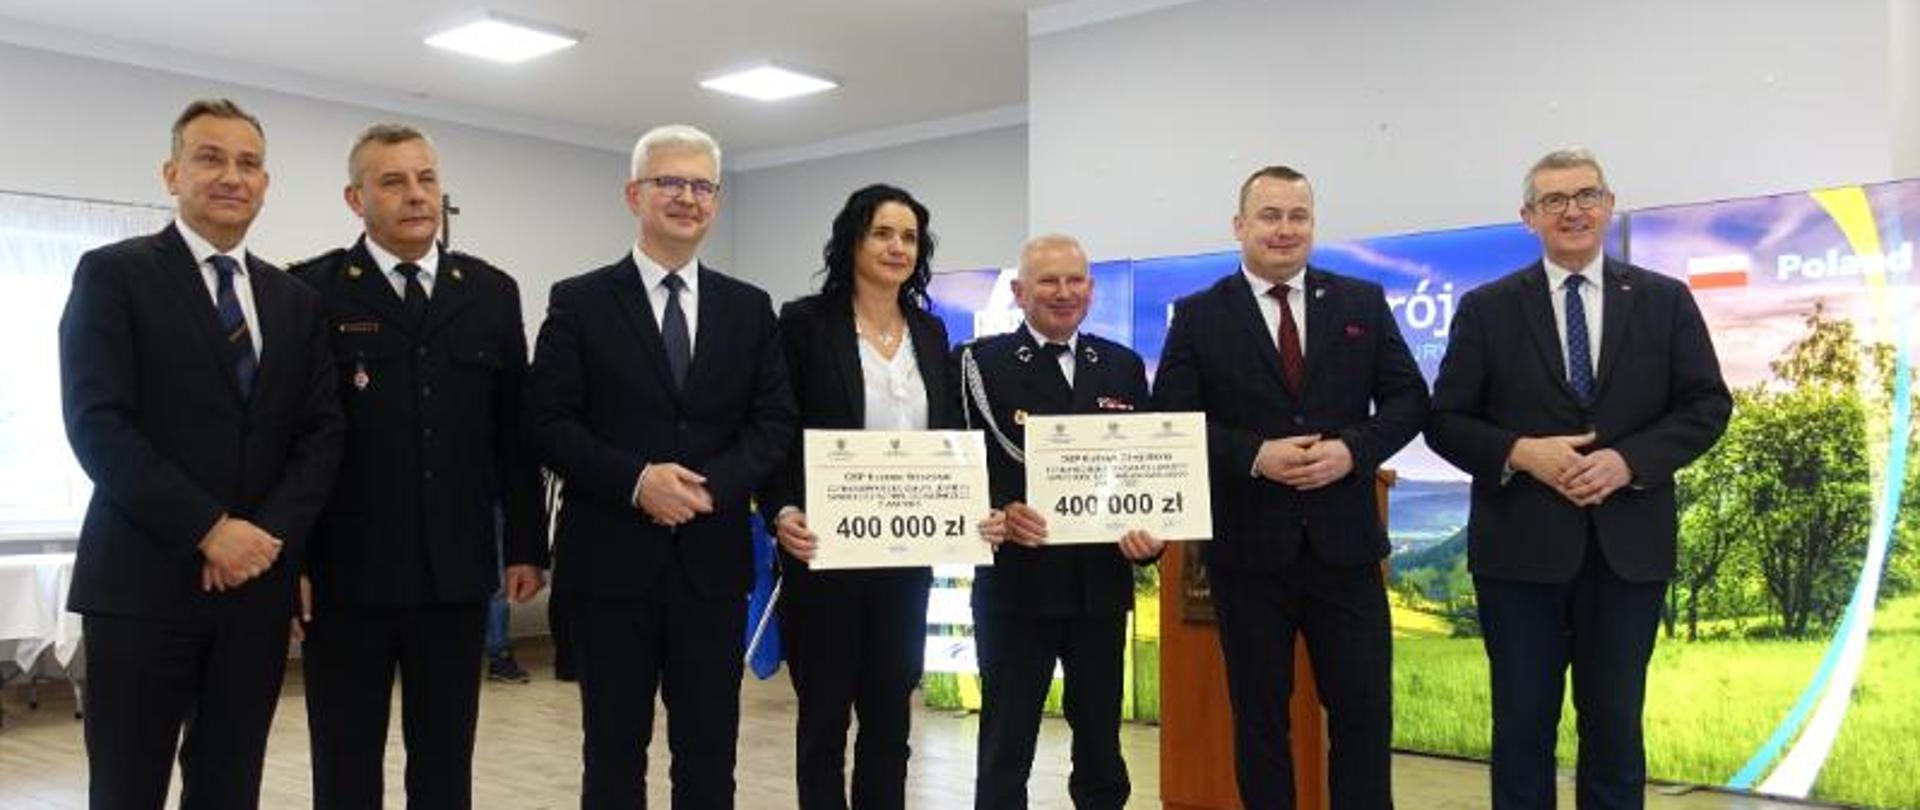 Wiceminister Ireneusz Zyska wręczył promesy na zakup nowych samochodów dla OSP z Dolnego Śląska